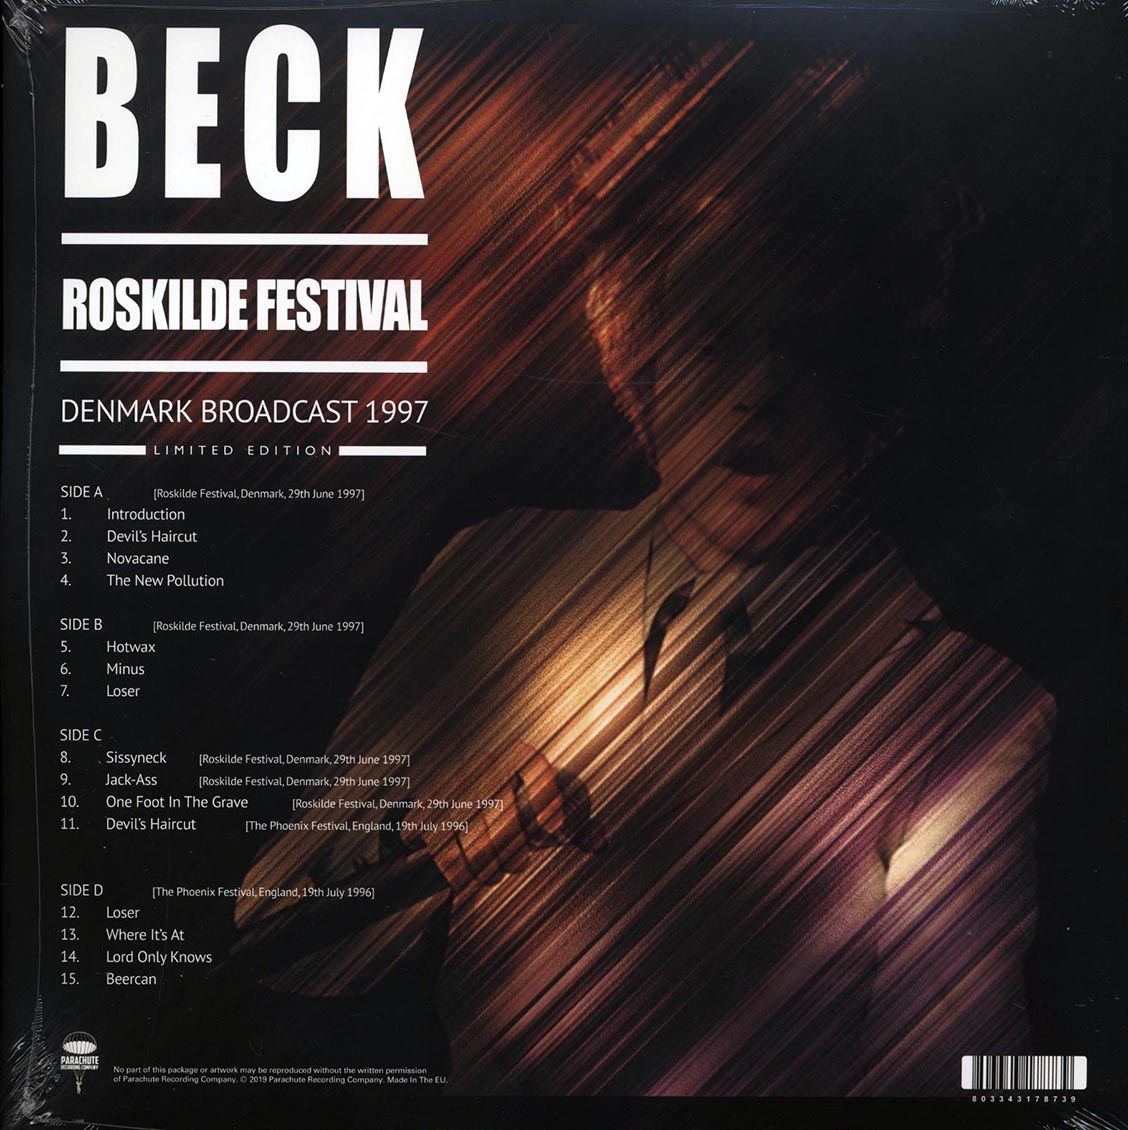 Beck – Roskilde Festival: Denmark Broadcast 1997